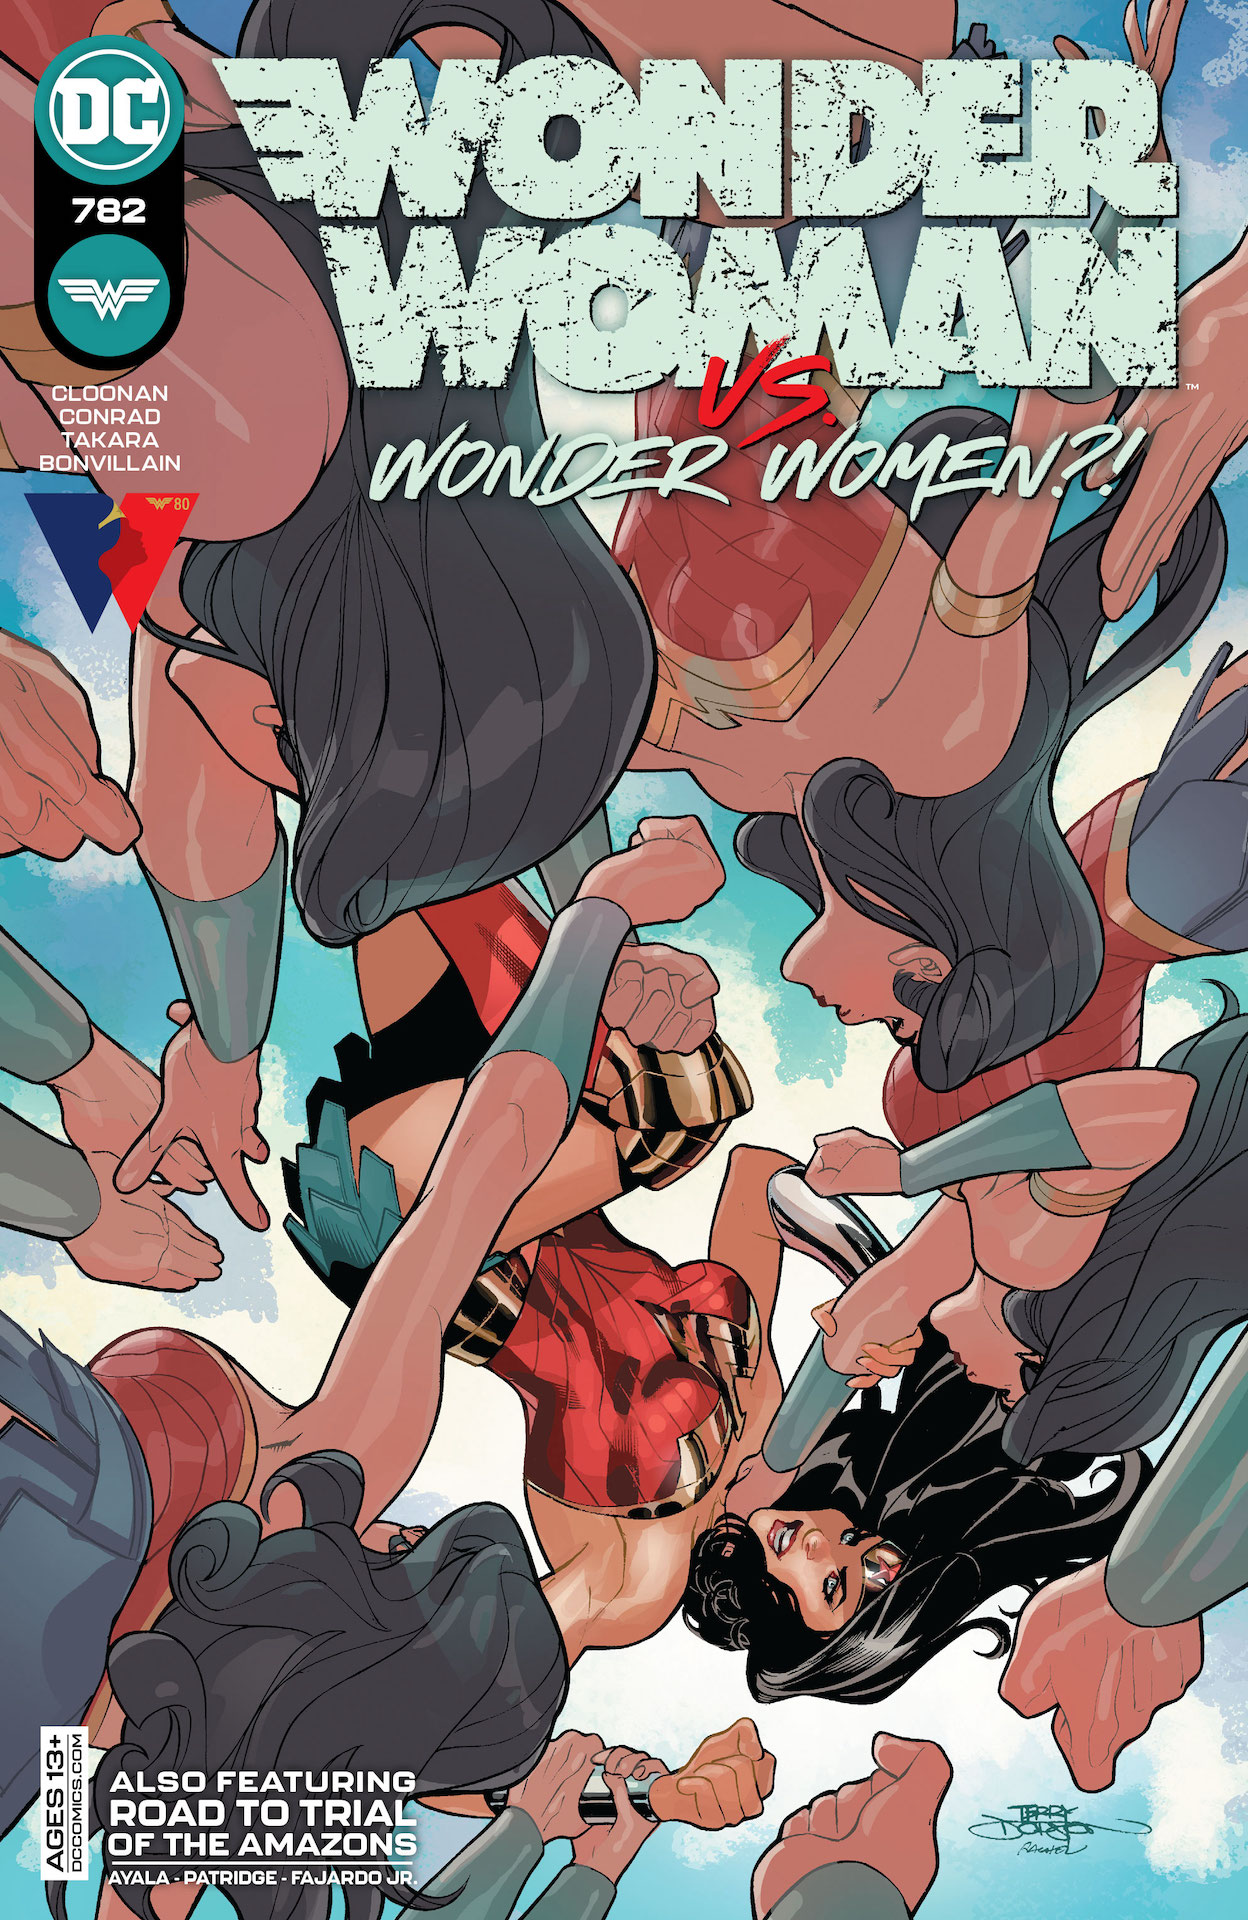 DC Preview: Wonder Woman #782